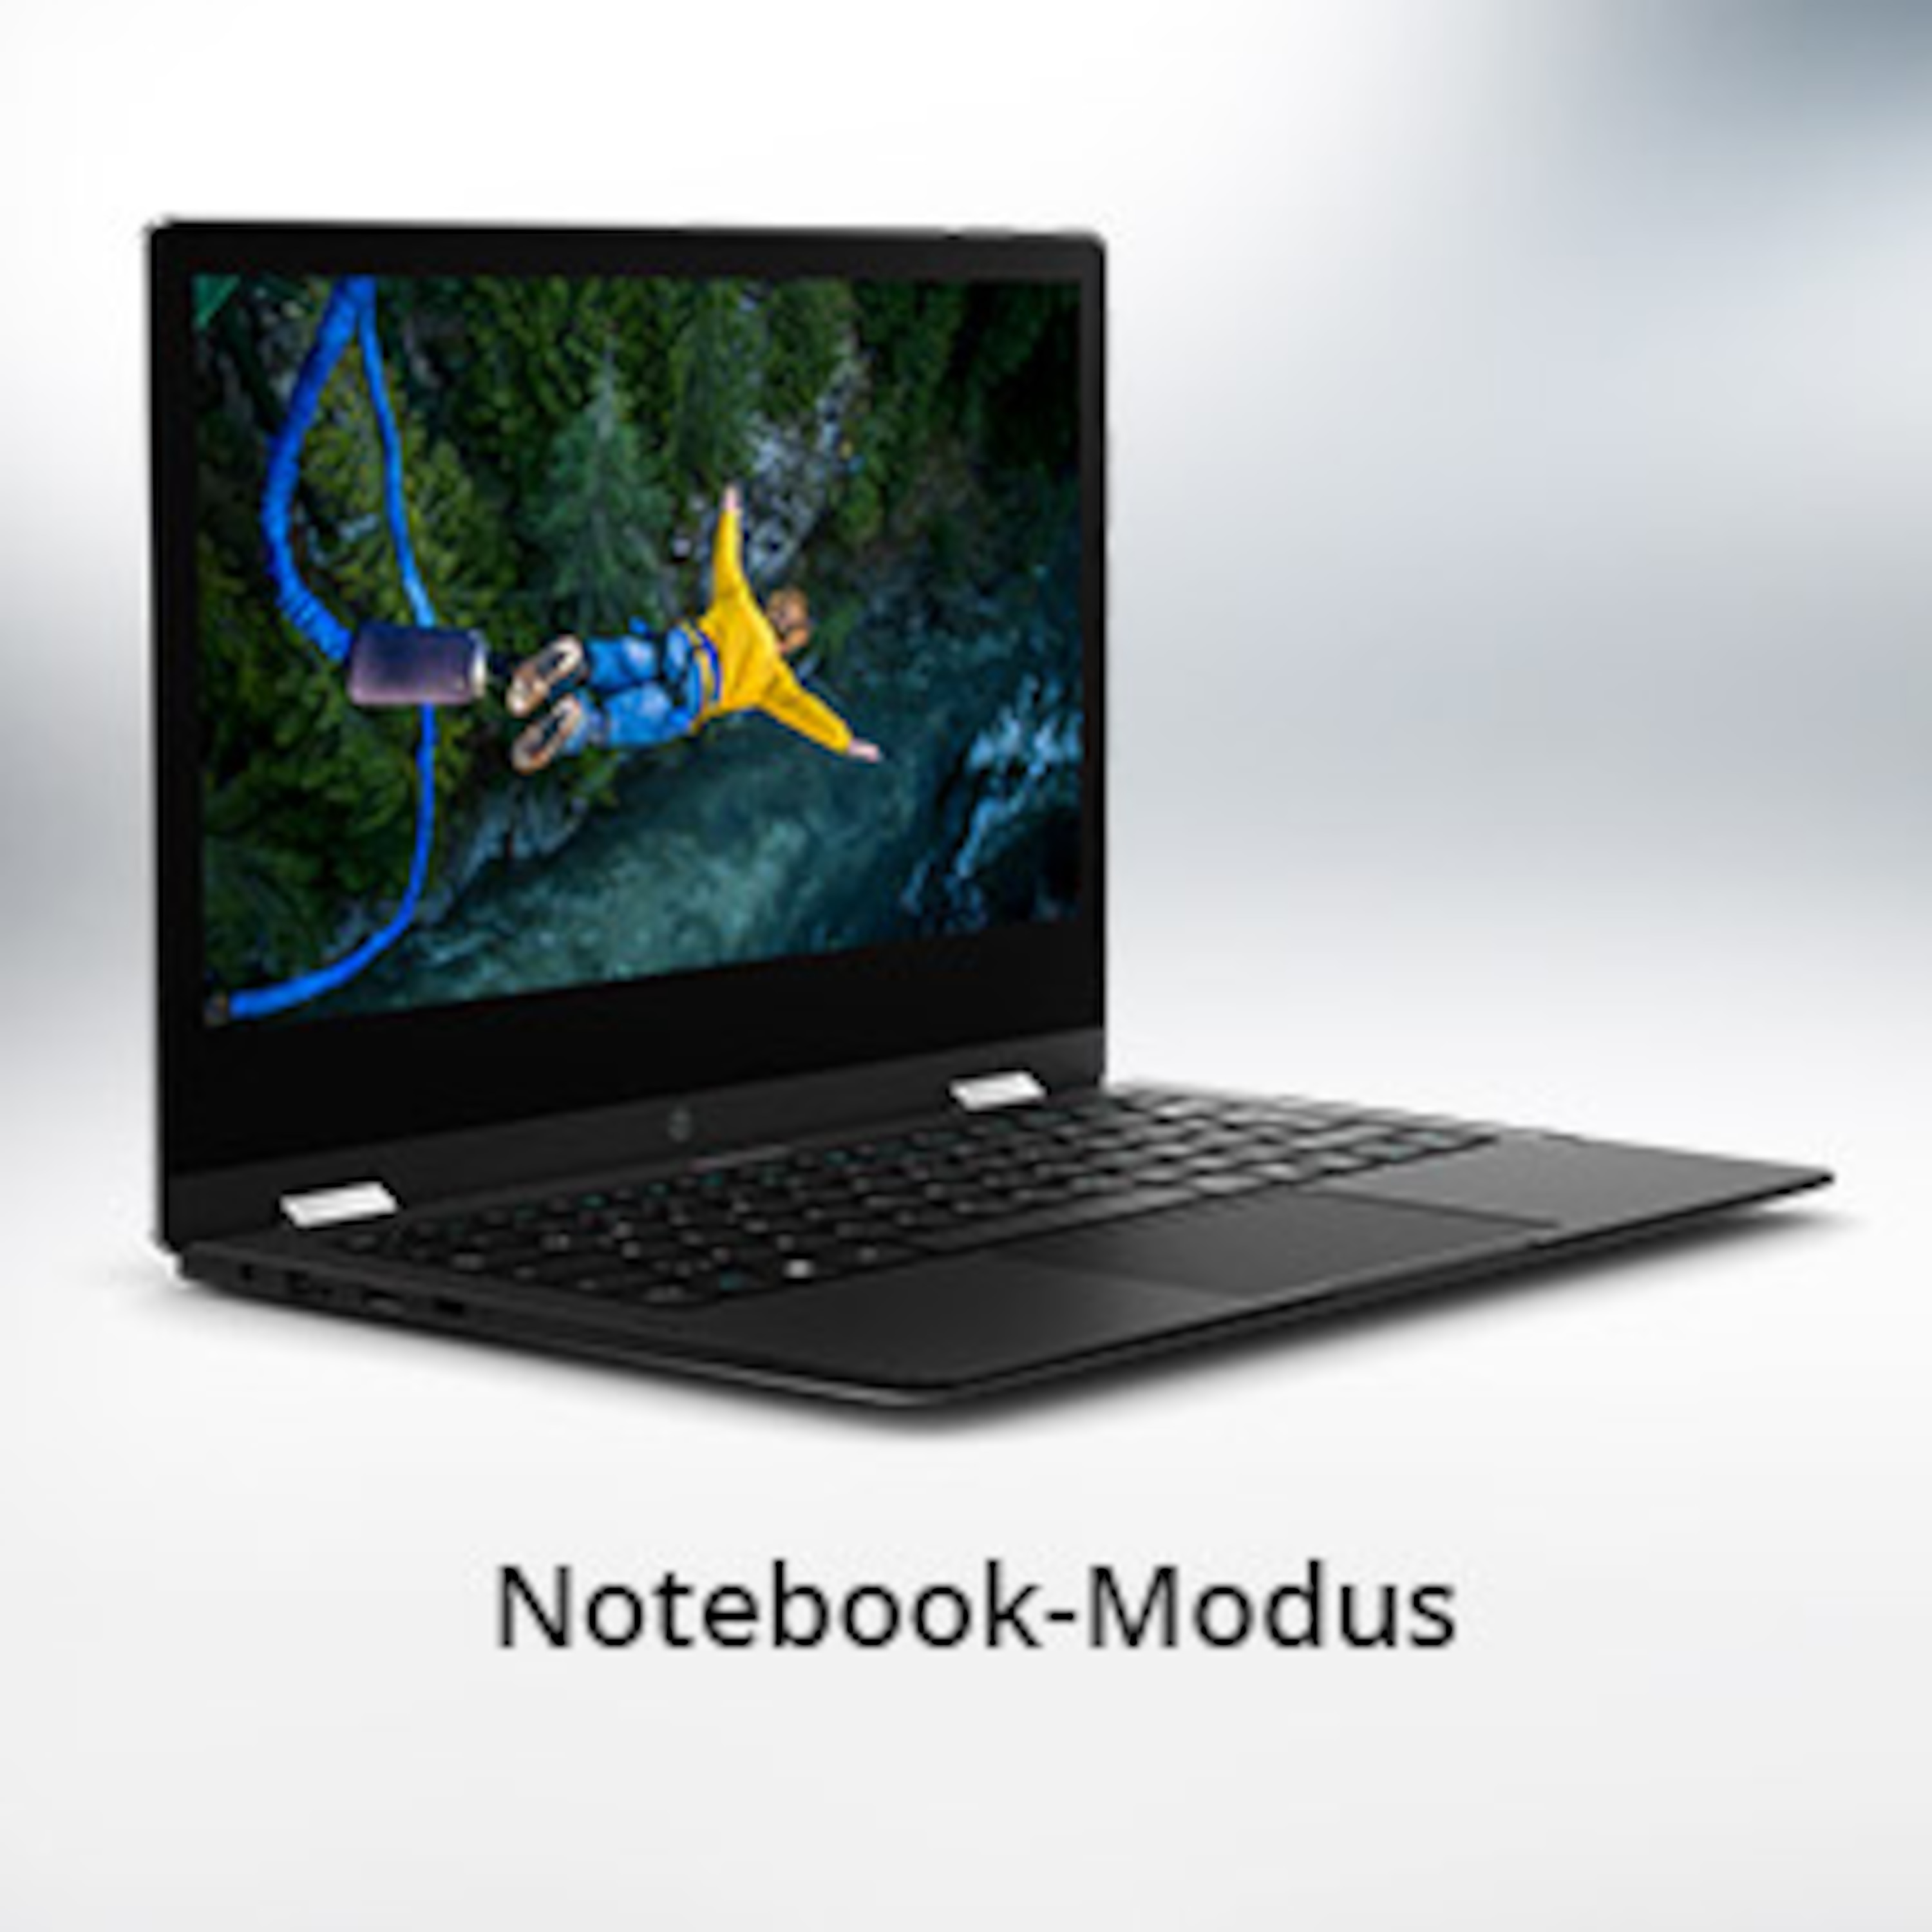 Jednoducho produktívnejší: režim notebooku